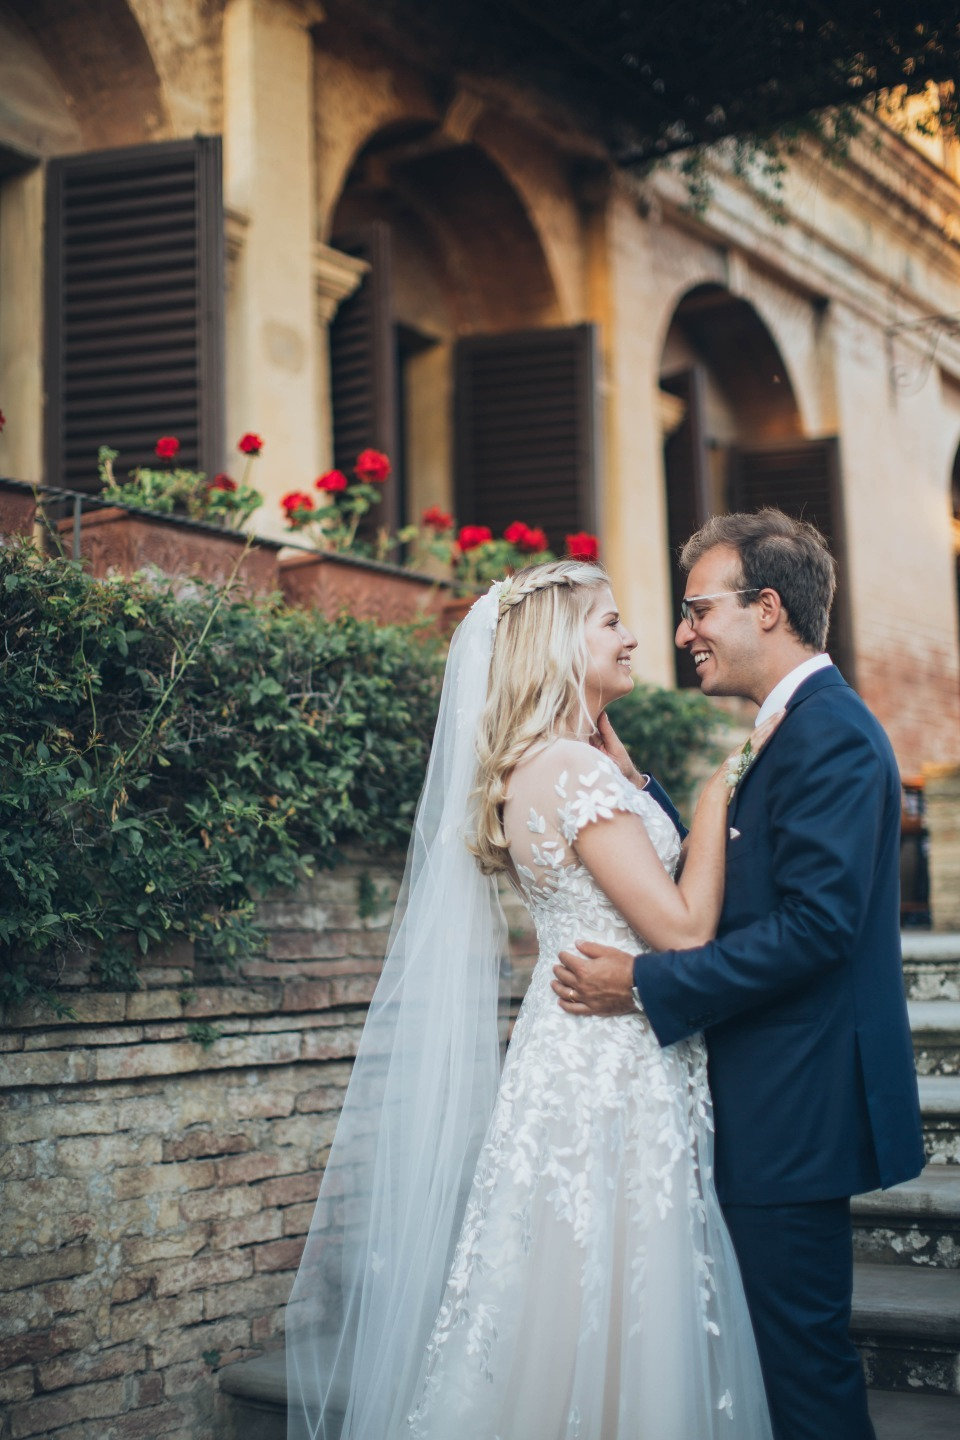 Наша Тосканская свадьба: опыт невесты